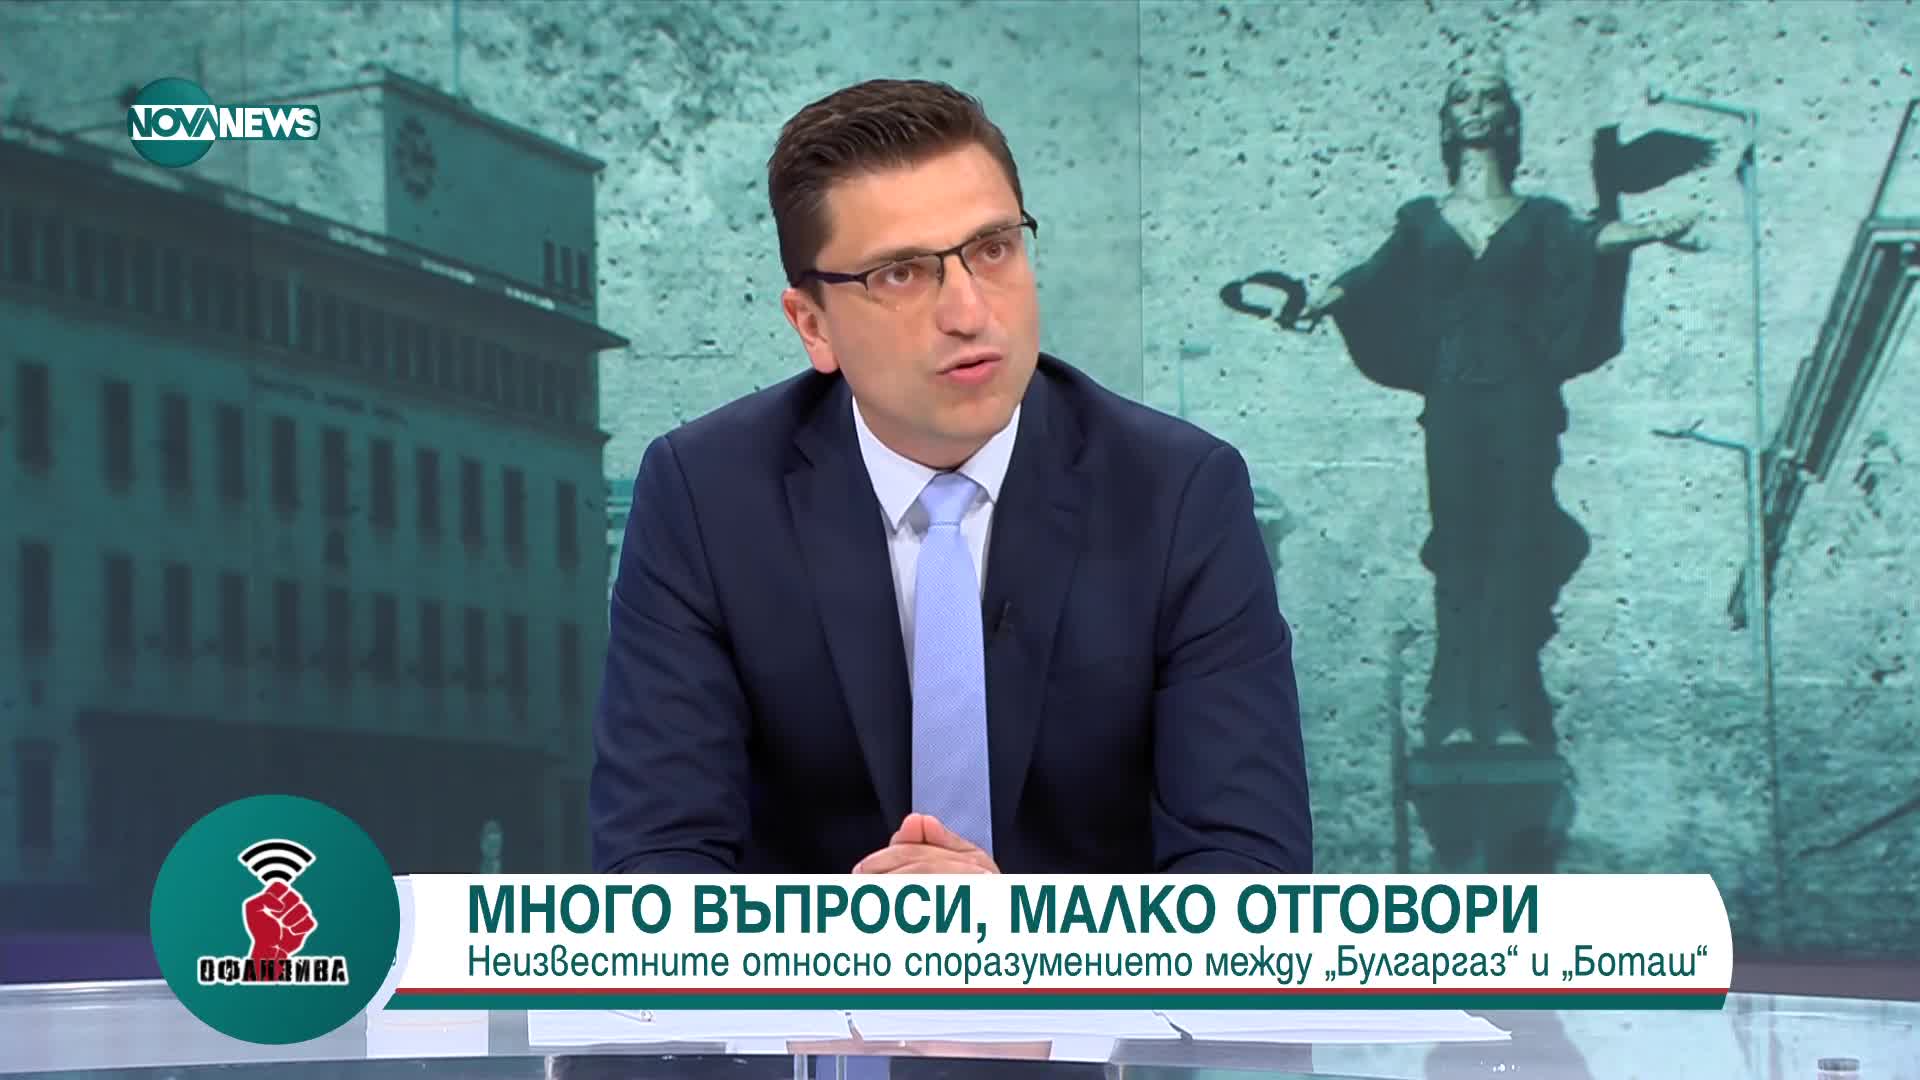 Венко Сабрутев: Ако президентът продължава да разединява нацията, няма друг изход освен импийчмънт